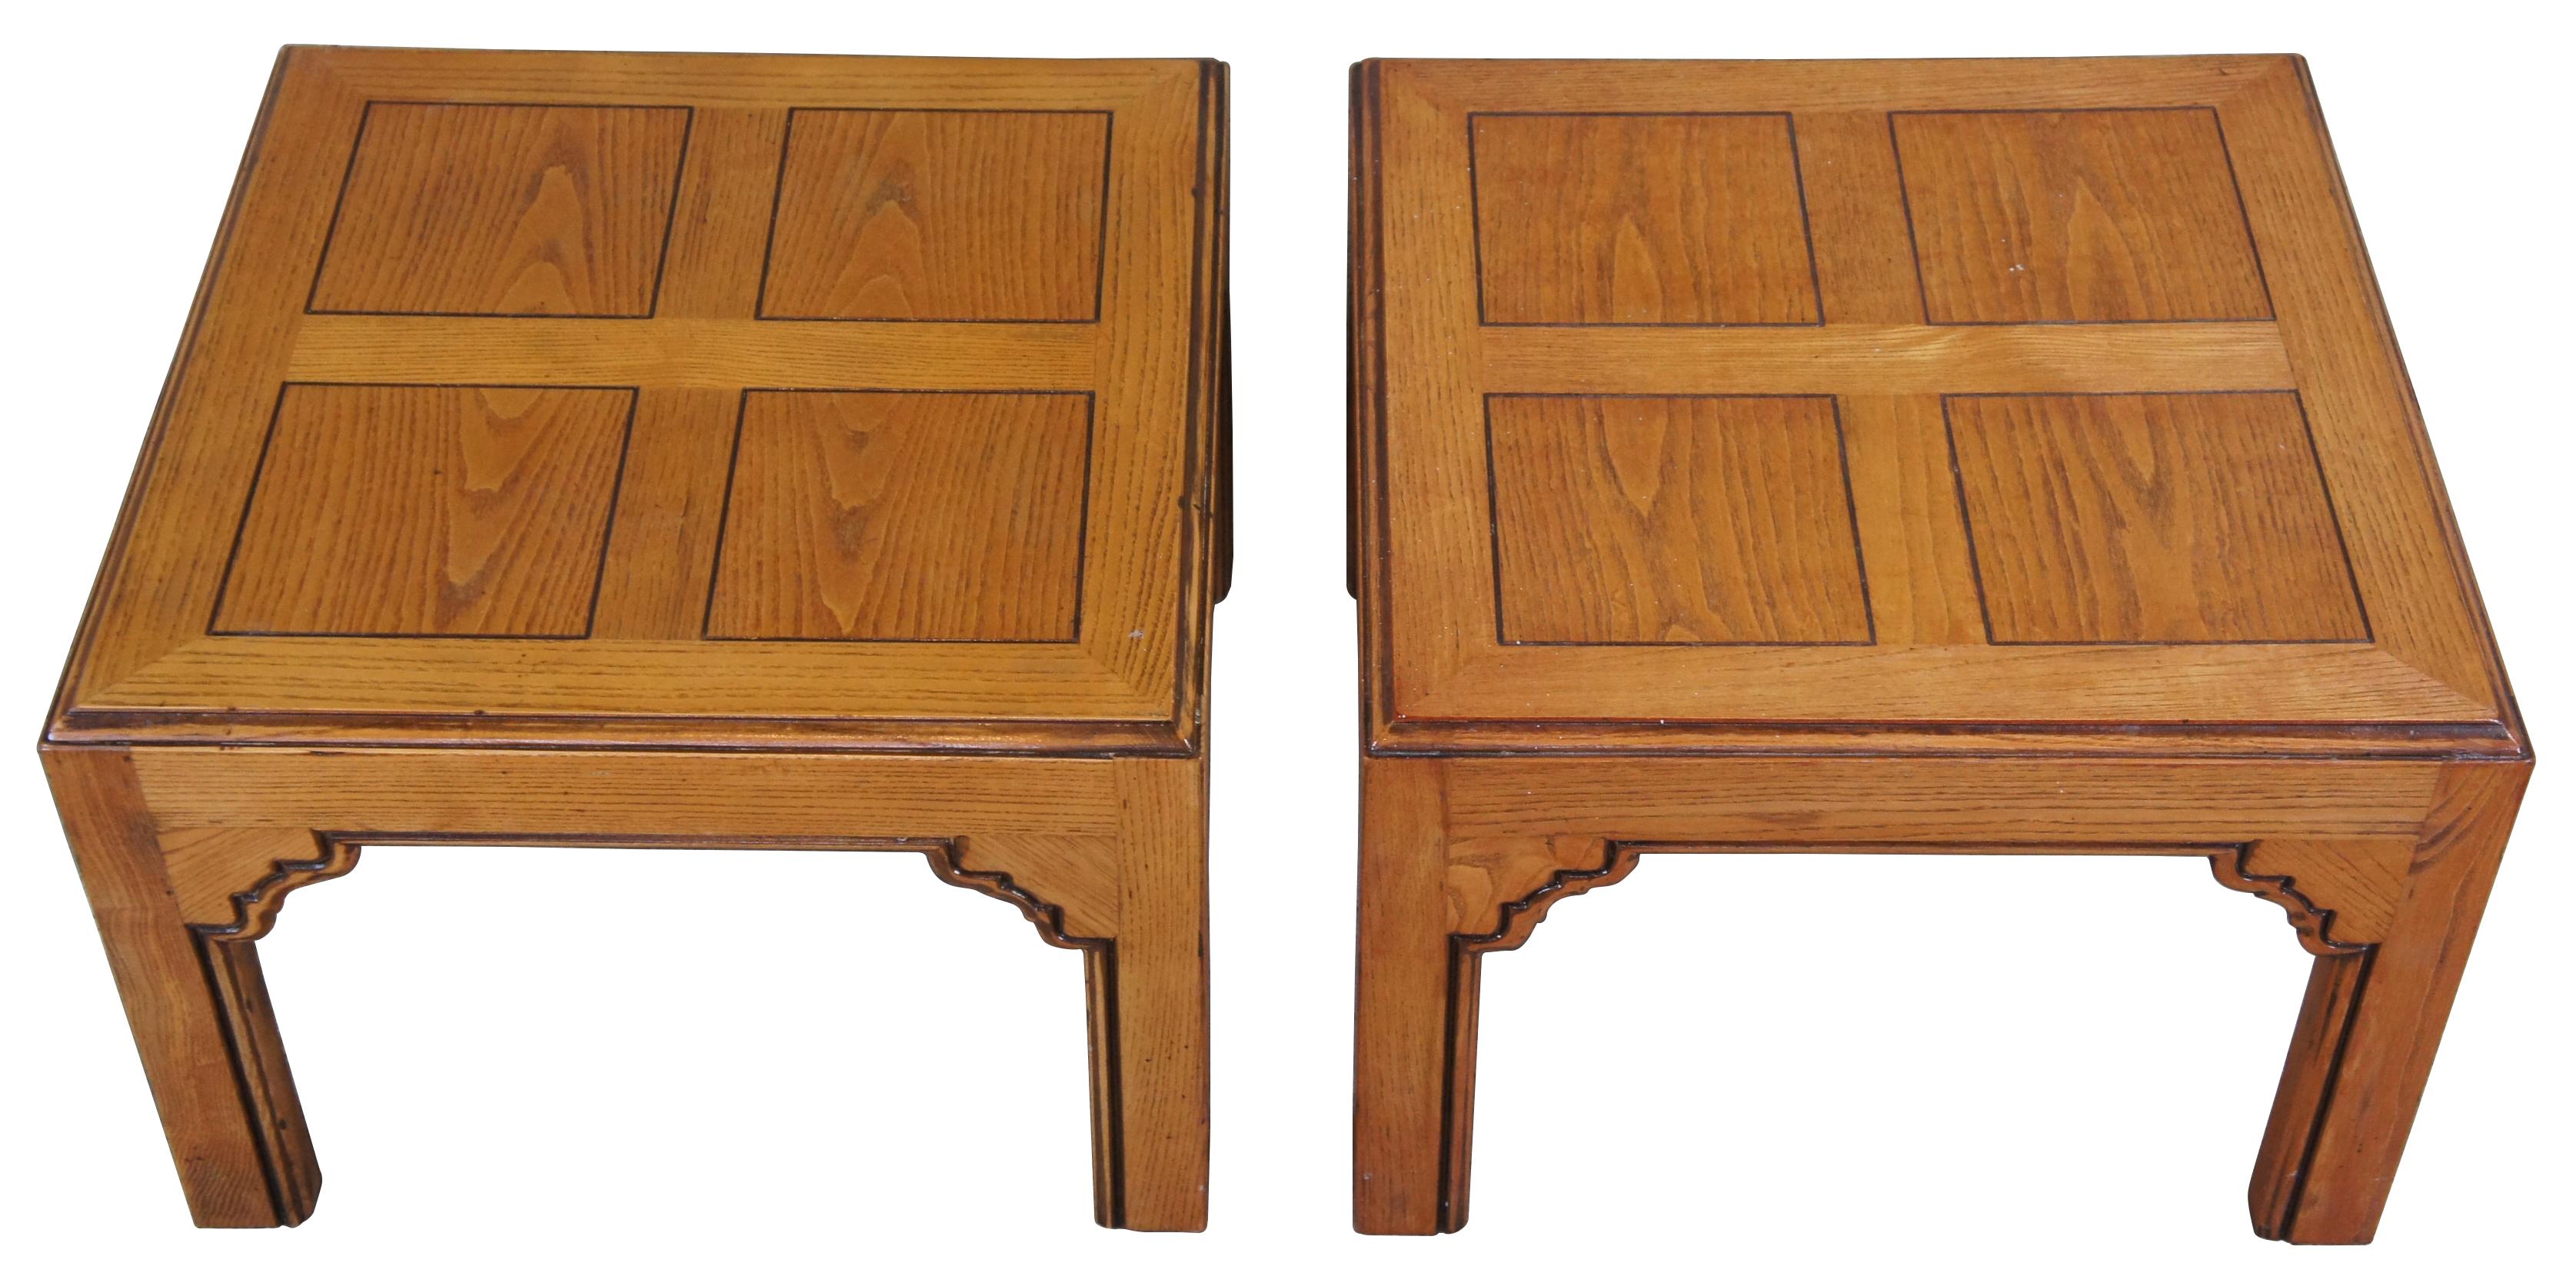 2 tables d'appoint Henredon Four Centuries, vers les années 1970. Fabriquée en chêne massif, elle présente une forme carrée et un plateau à panneaux sur des pieds droits.